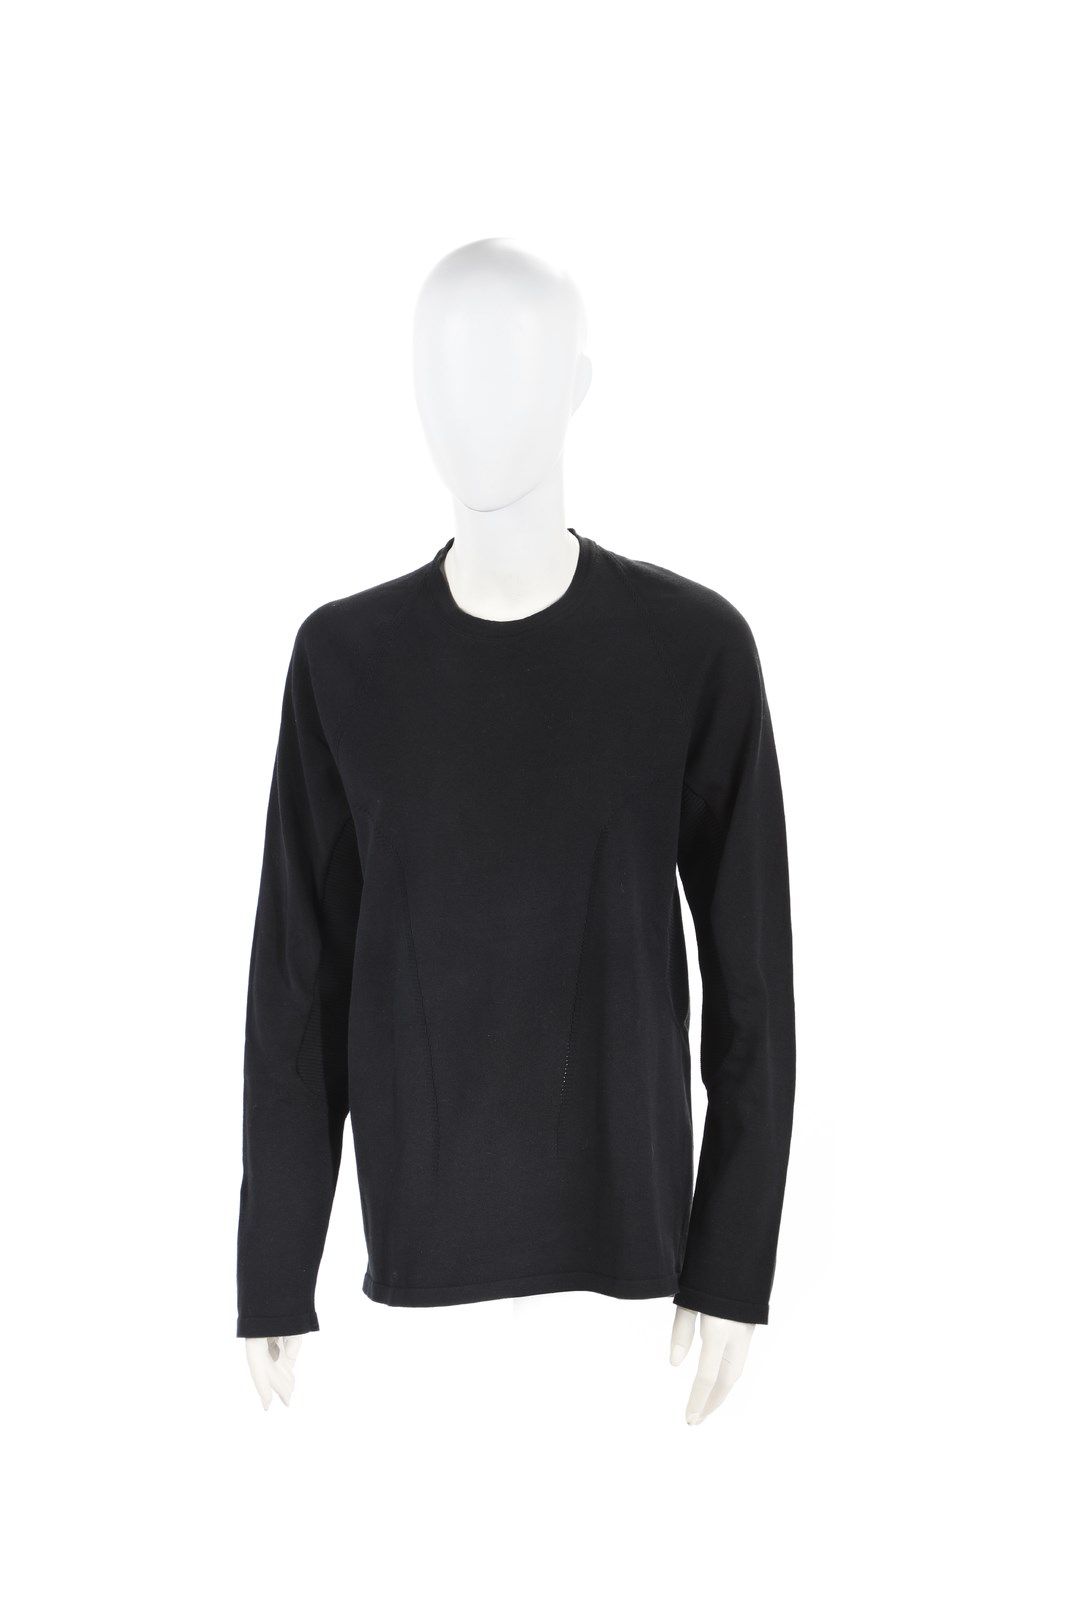 GIANFRANCO FERRE' Black wool sweater. 80's. Schwarzer Wollpullover. 80's. Wolle.&hellip;